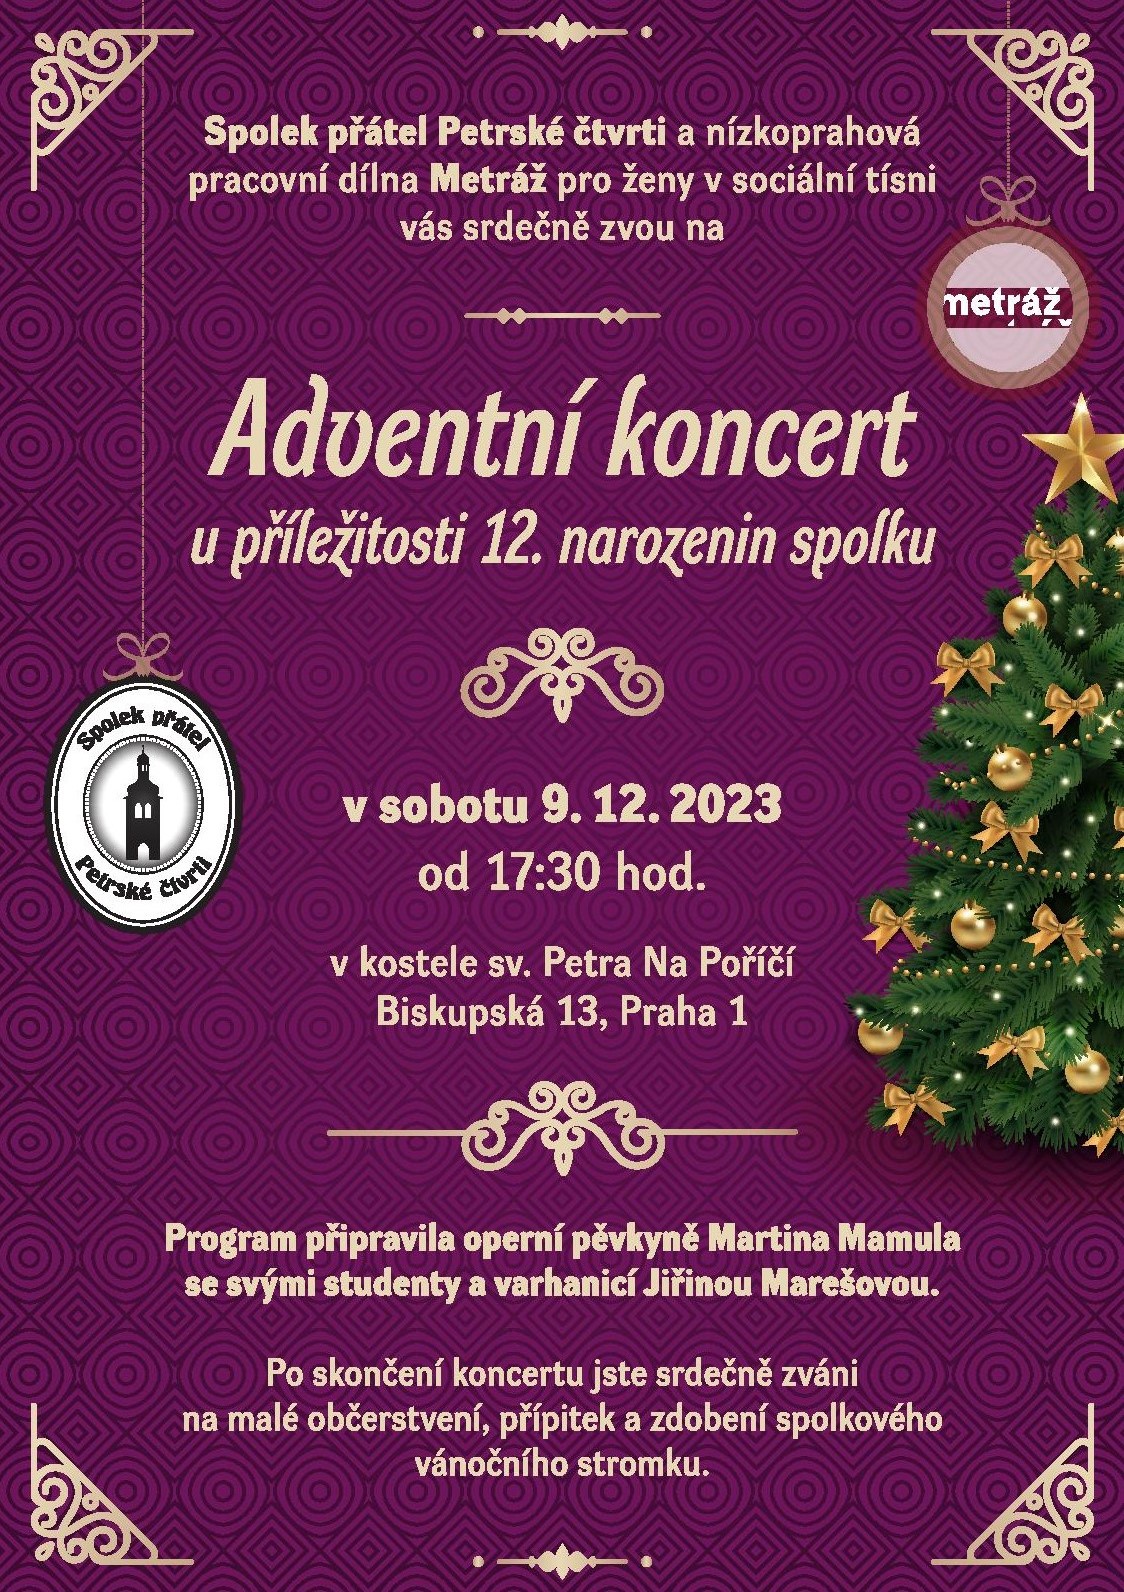 Adventní koncert u příležitosti 12. narozenin Spolku přátel Petrské čtvrti